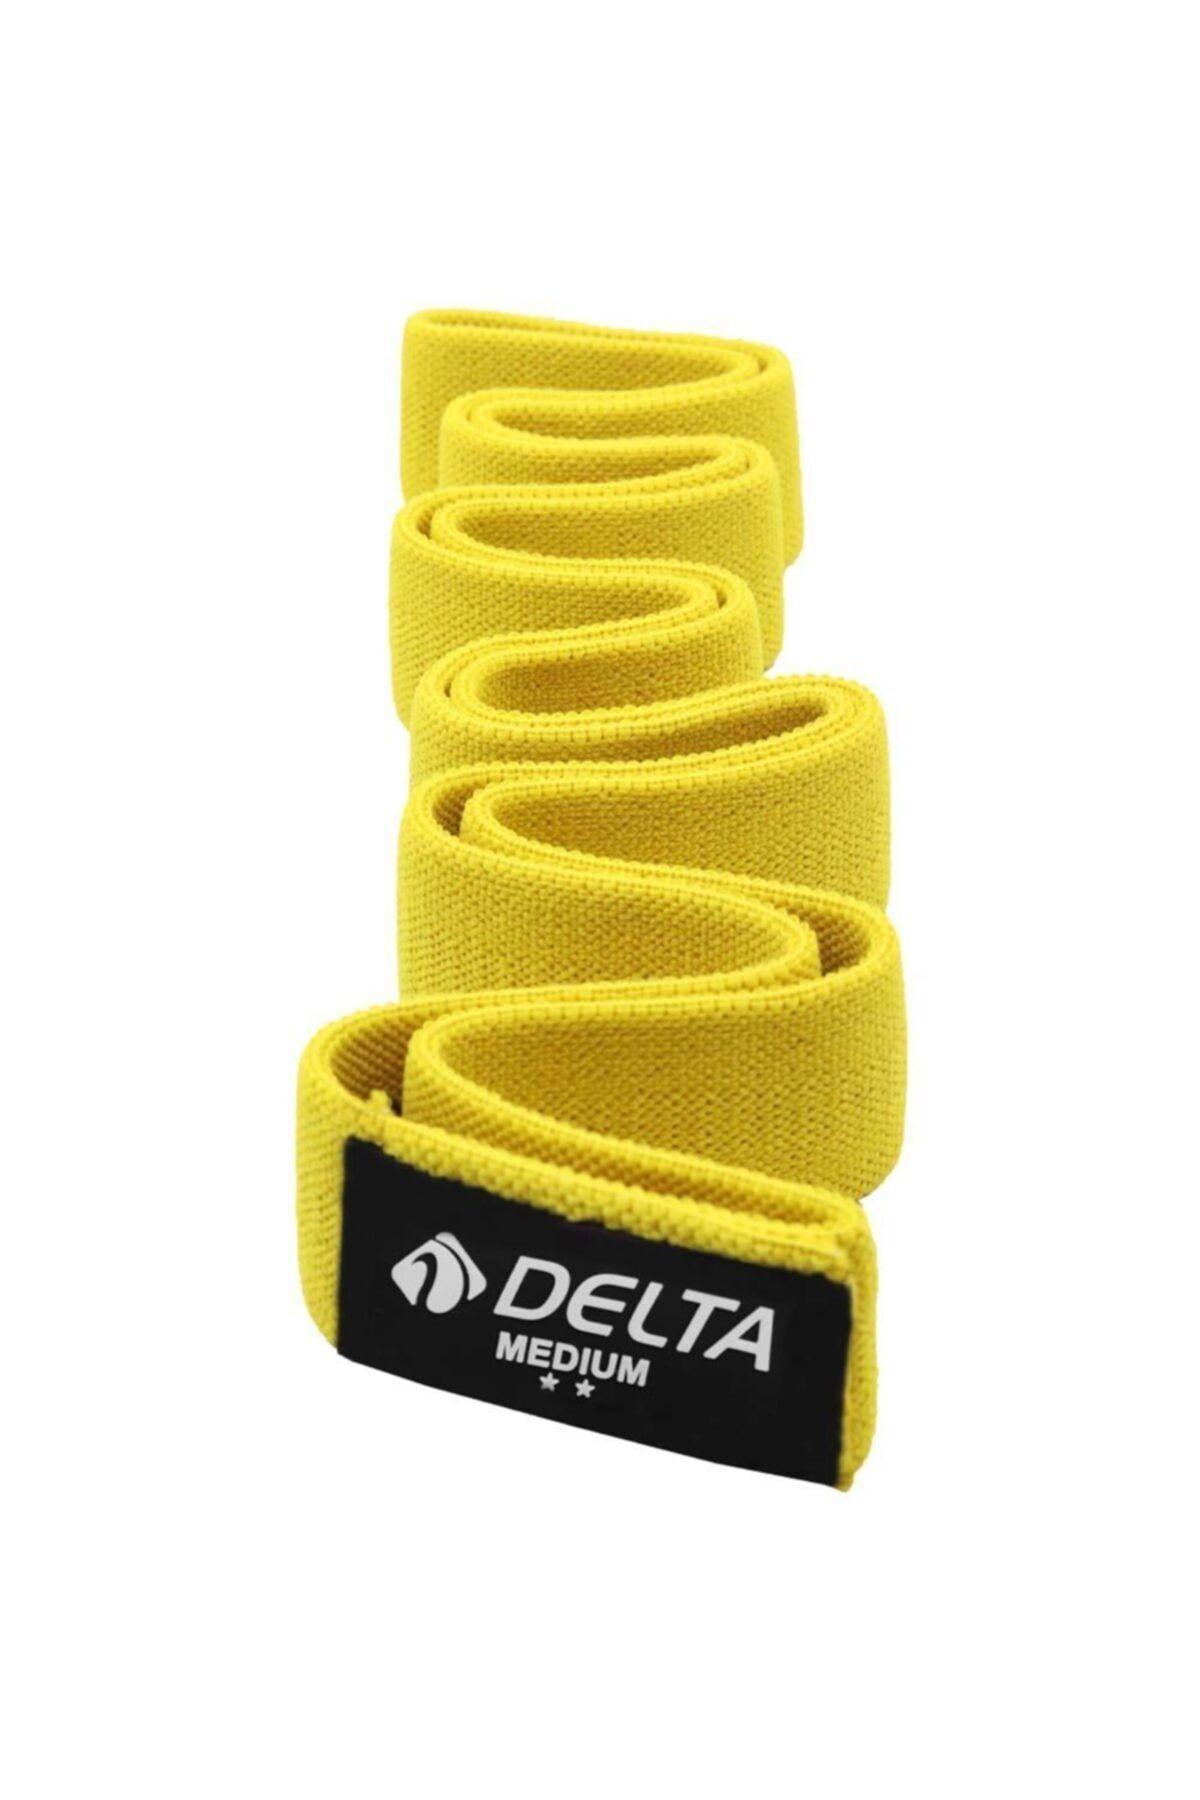 Delta Orta Sert SuperLoop Bant Barfiks Çekmeye Yardımcı Direnç Bandı Lastiği (Uç Kısmı Kapalı)